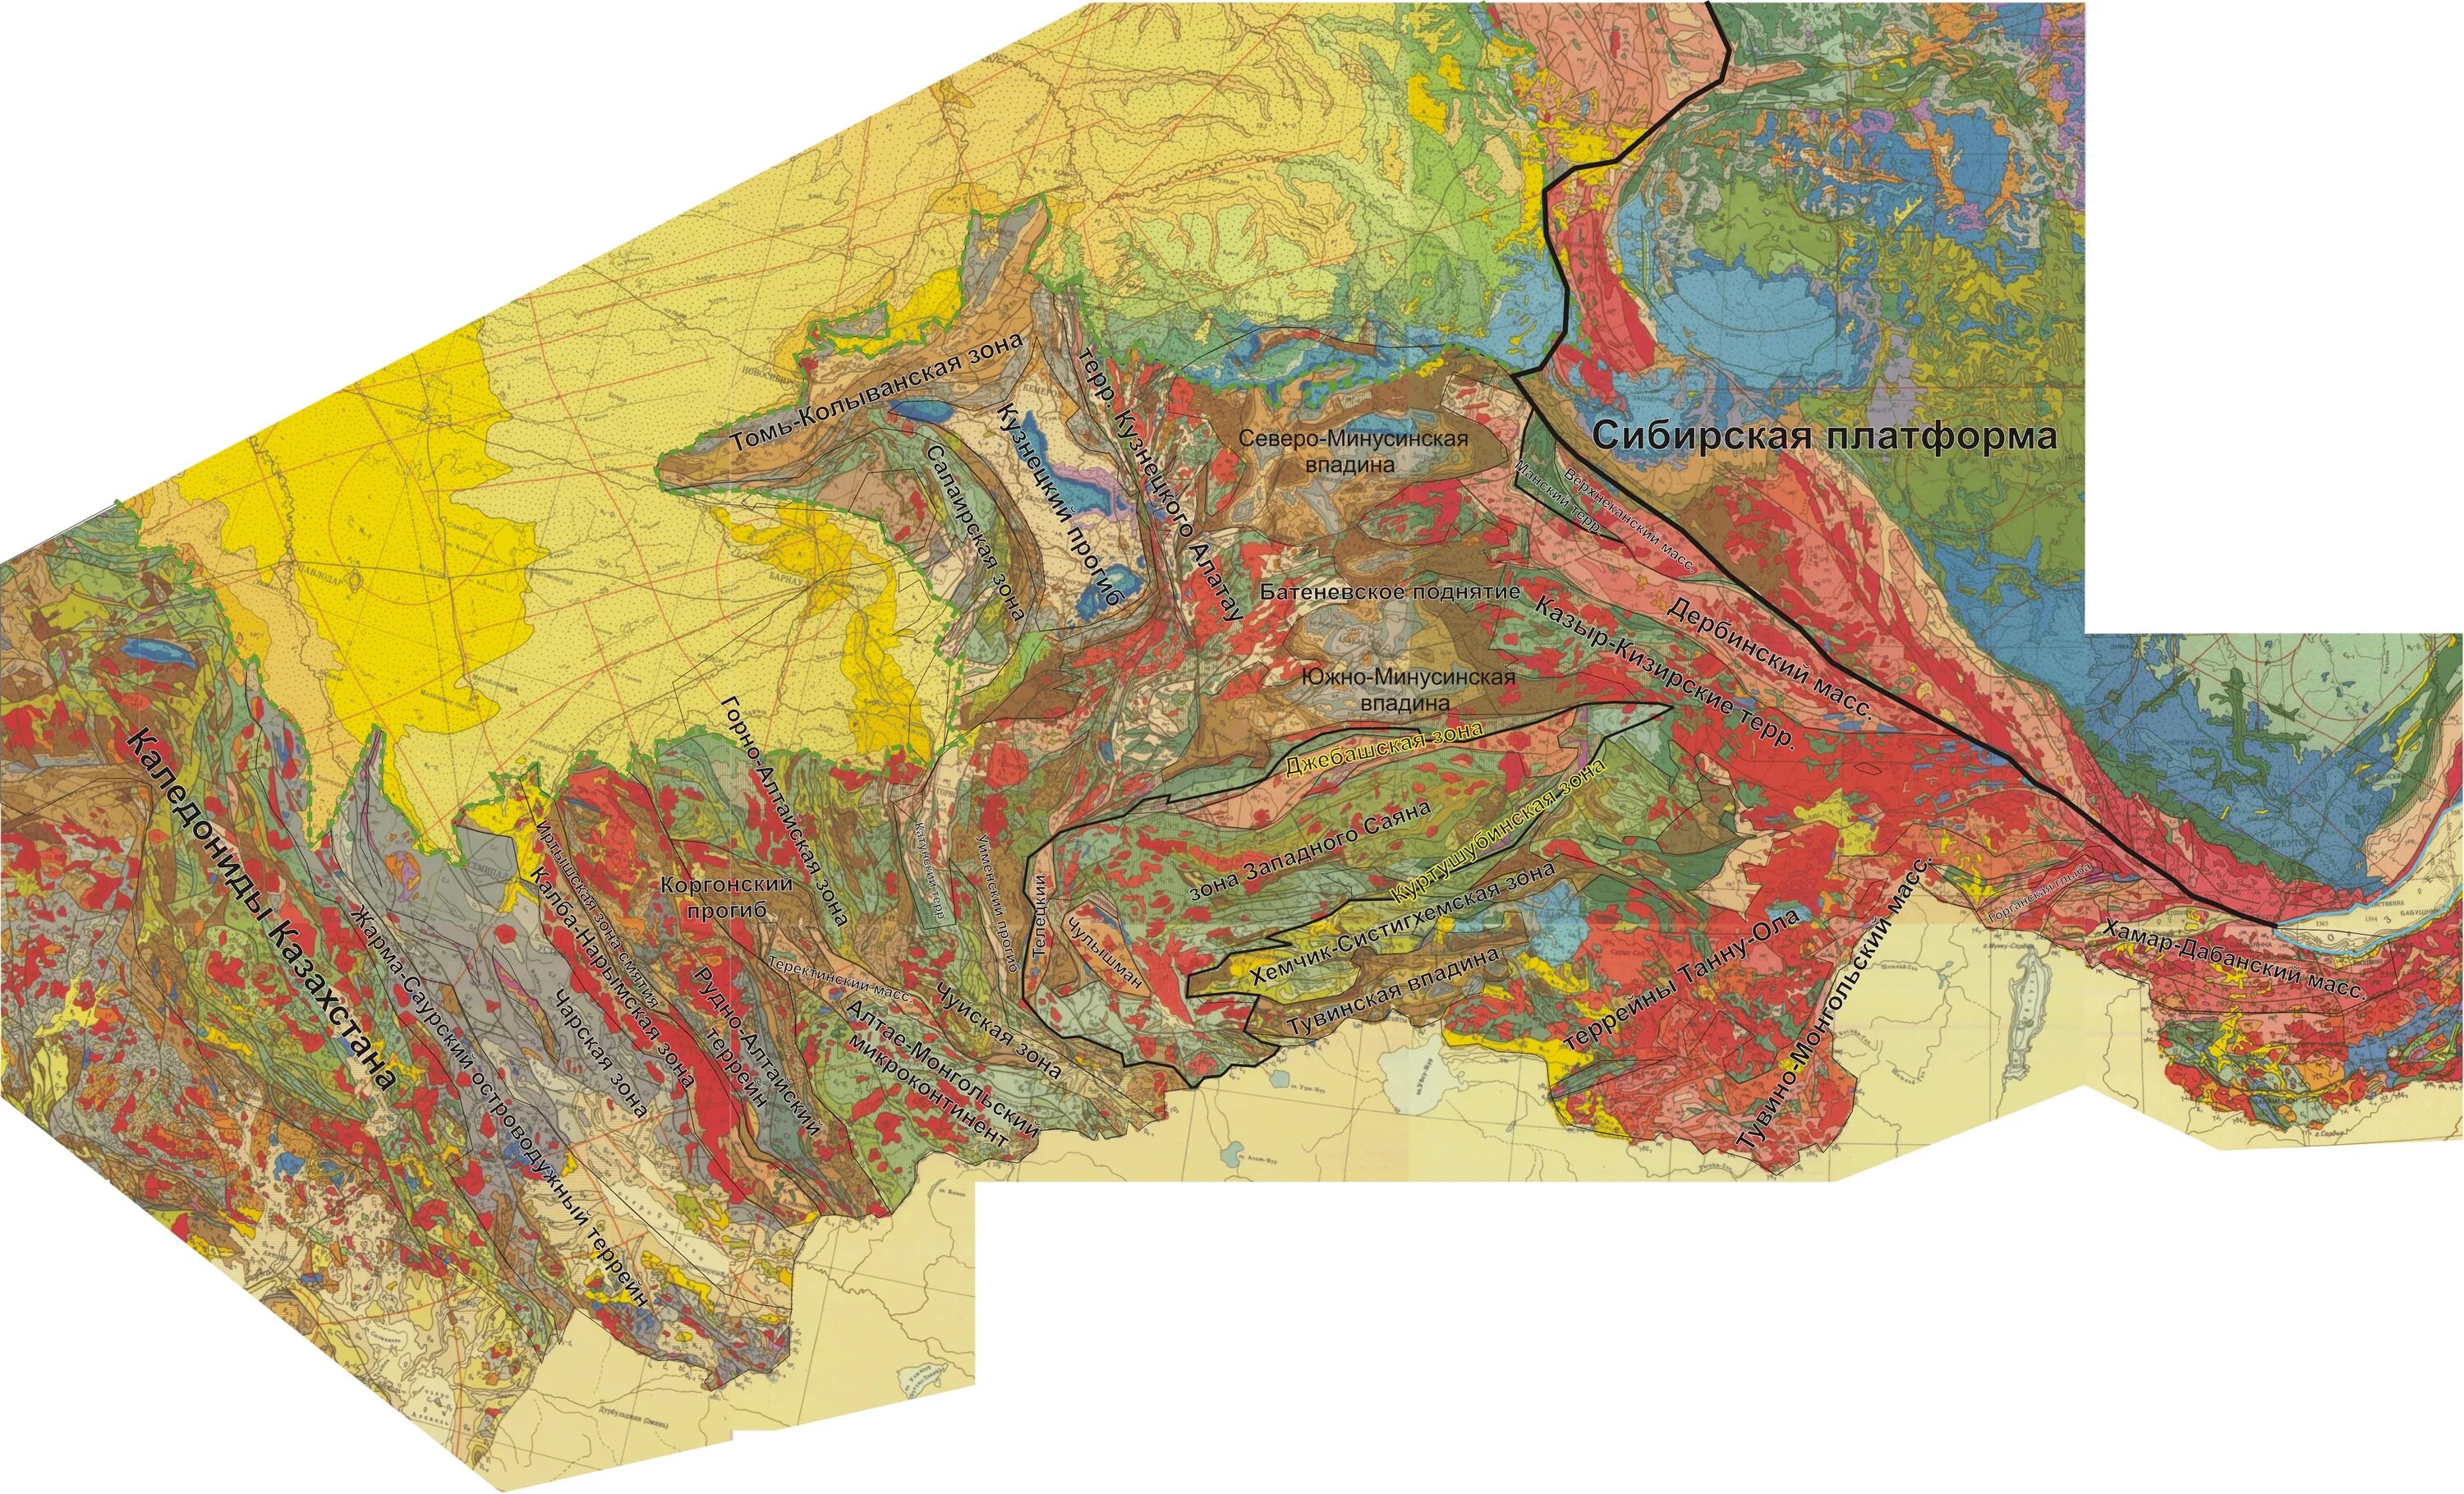 Геологическое восточной сибири. Алтае-Саянская складчатая область. Алтае Саянская складчатая область границы. Тектоническая карта Алтае-Саянской складчатой области. Алтае-Саянская складчатая область на карте.